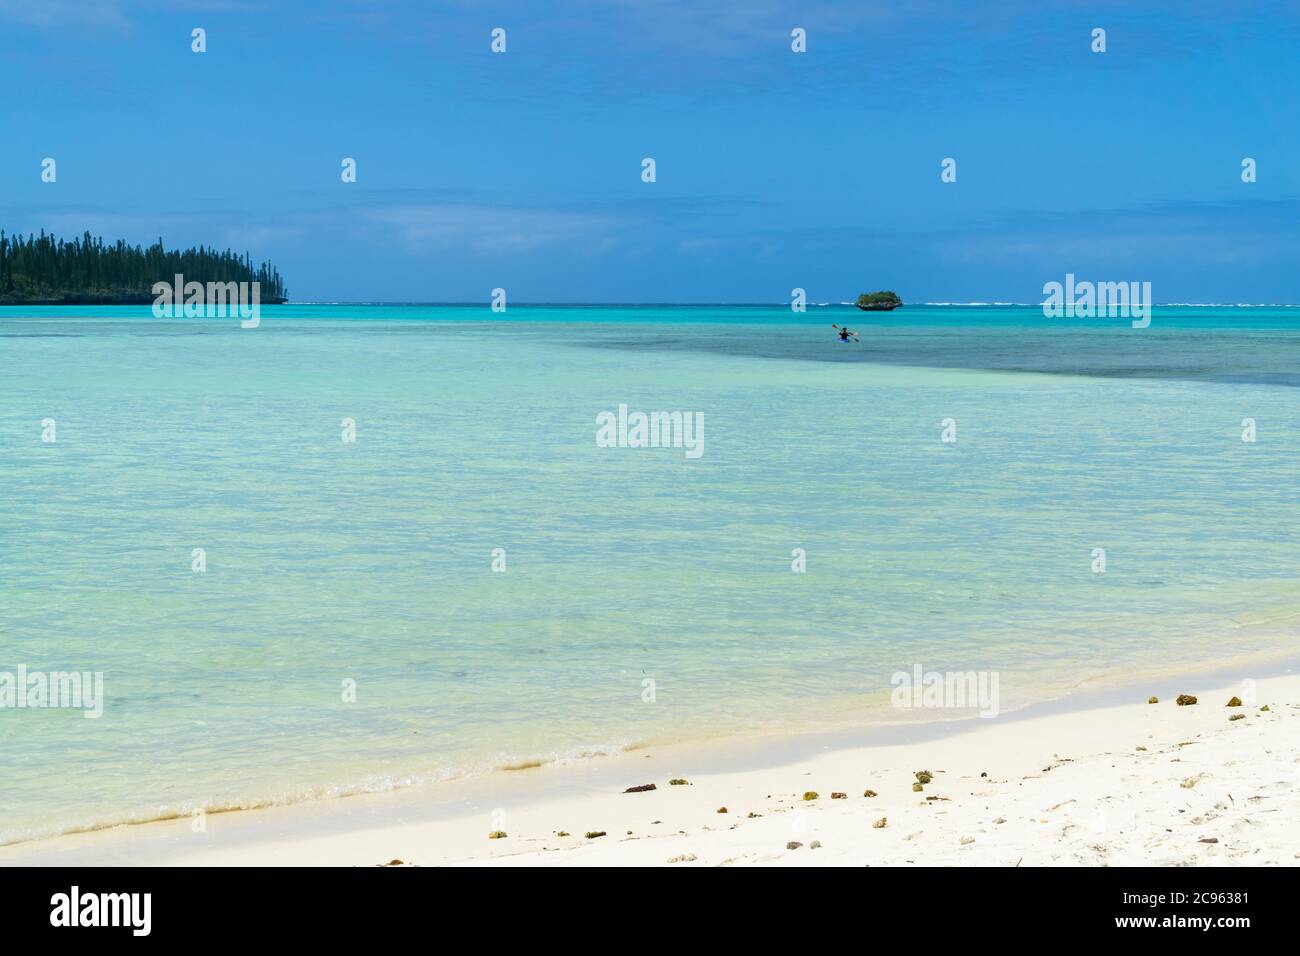 paysage marin de l'île Pines, nouvelle-calédonie : lagon turquoise, rochers typiques, ciel bleu Banque D'Images